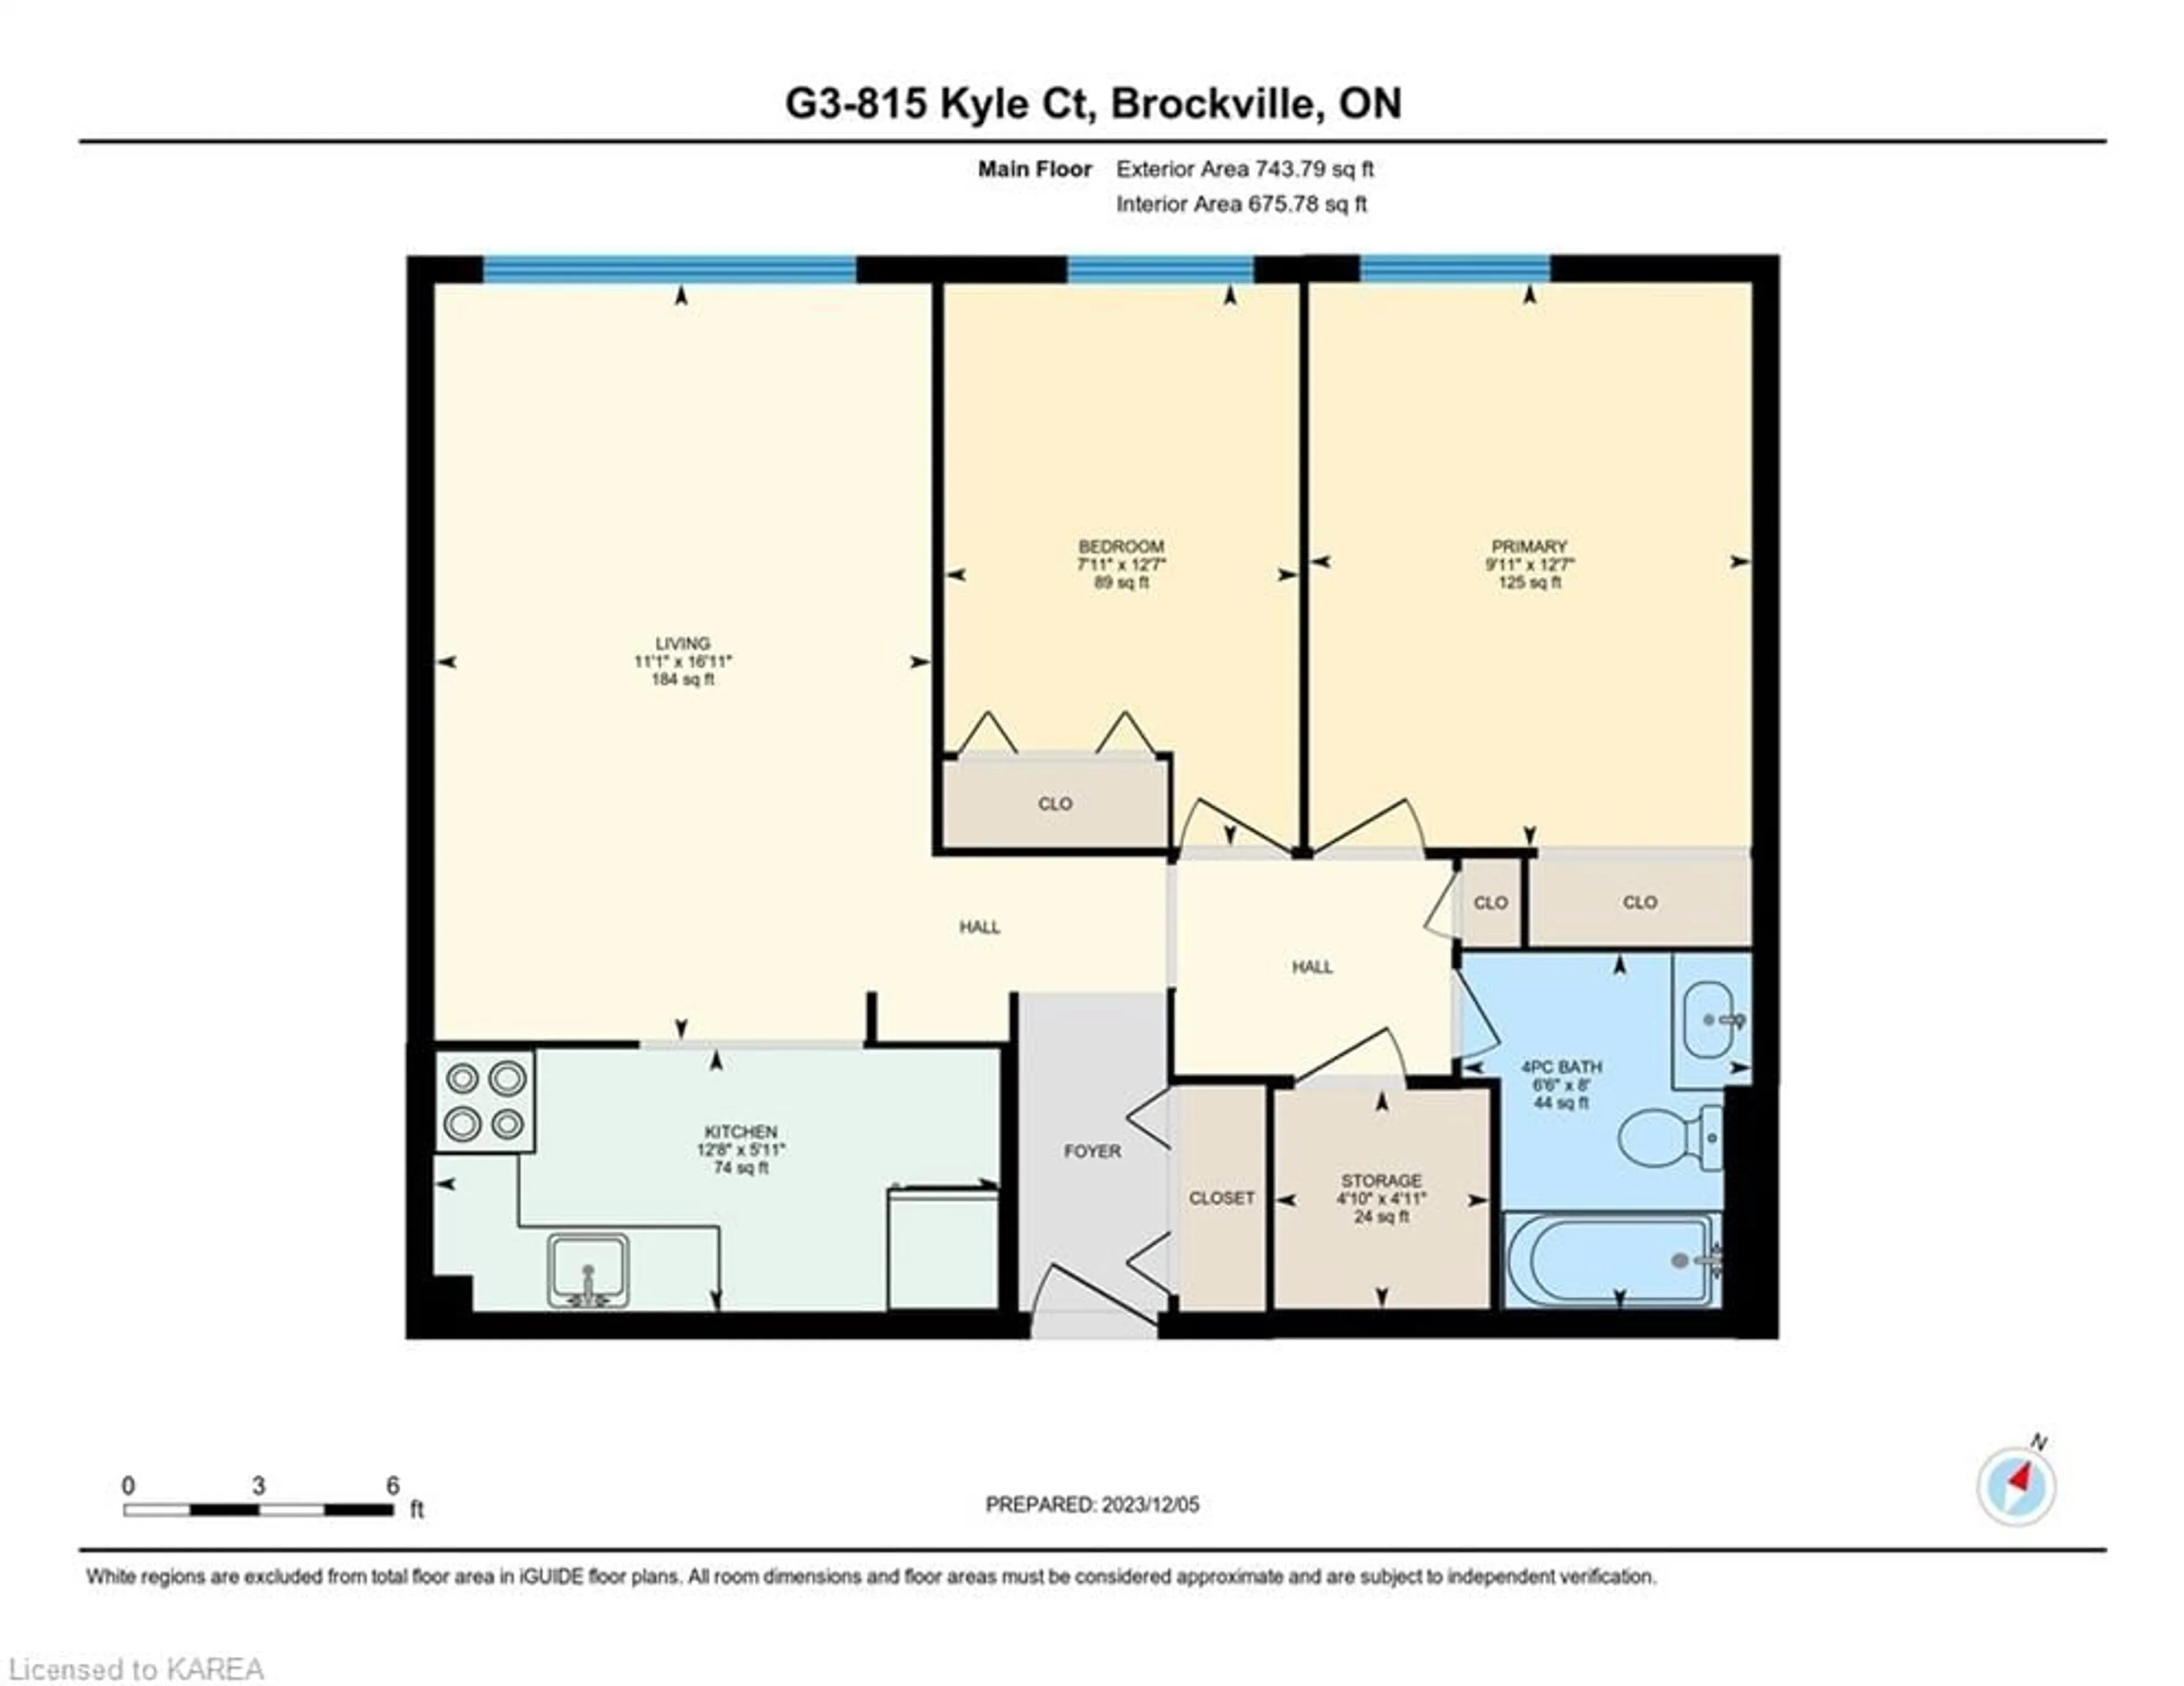 Floor plan for 815 Kyle Crt #G3, Brockville Ontario K6V 6K7